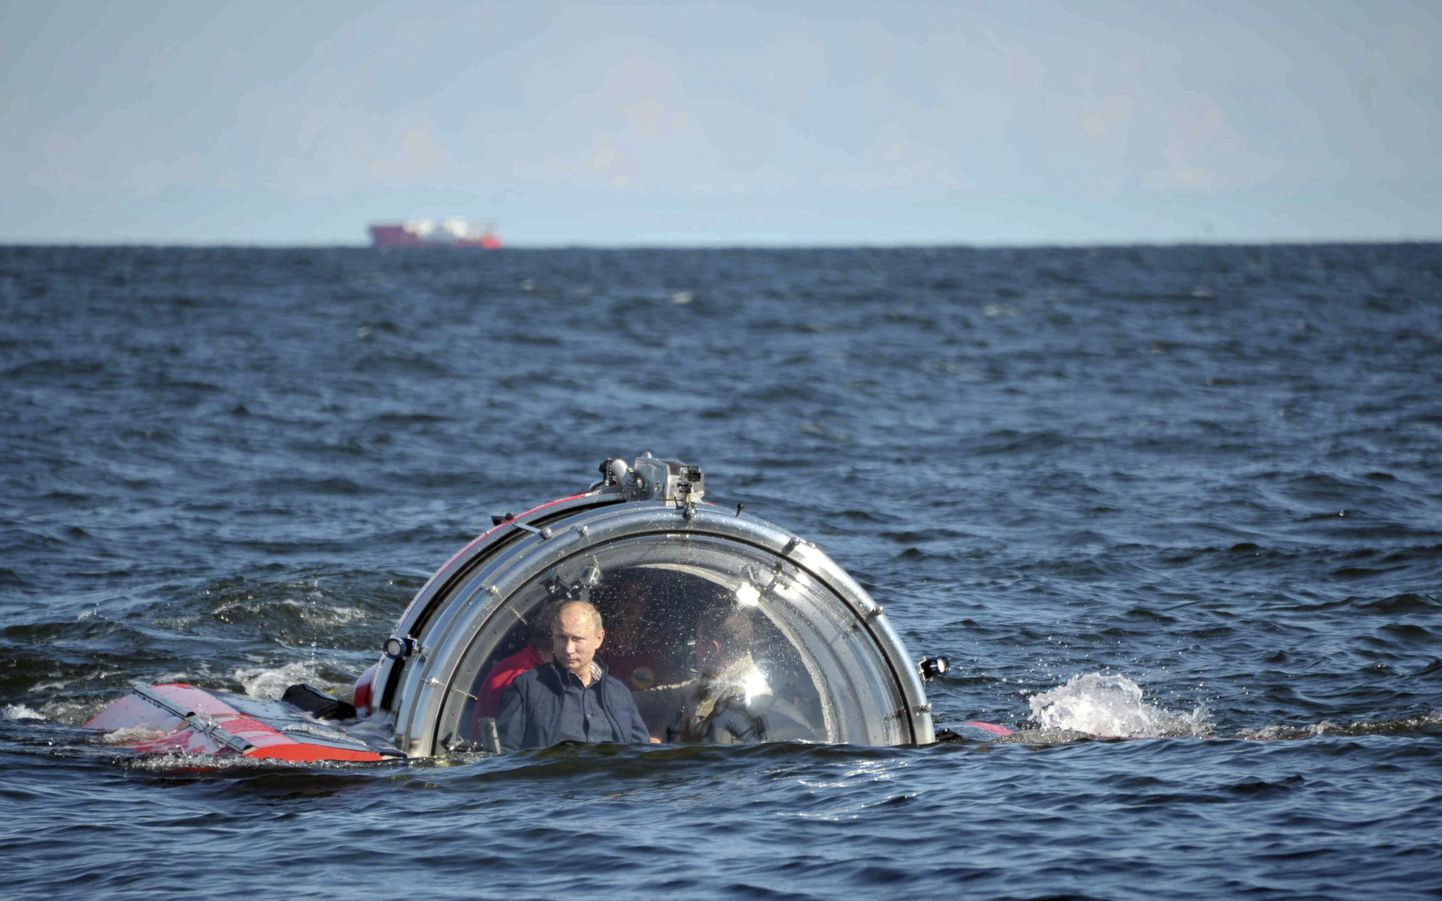 Venemaa president Vladimir Putin Läänemerel pisiallveelaevaga sõitmas.